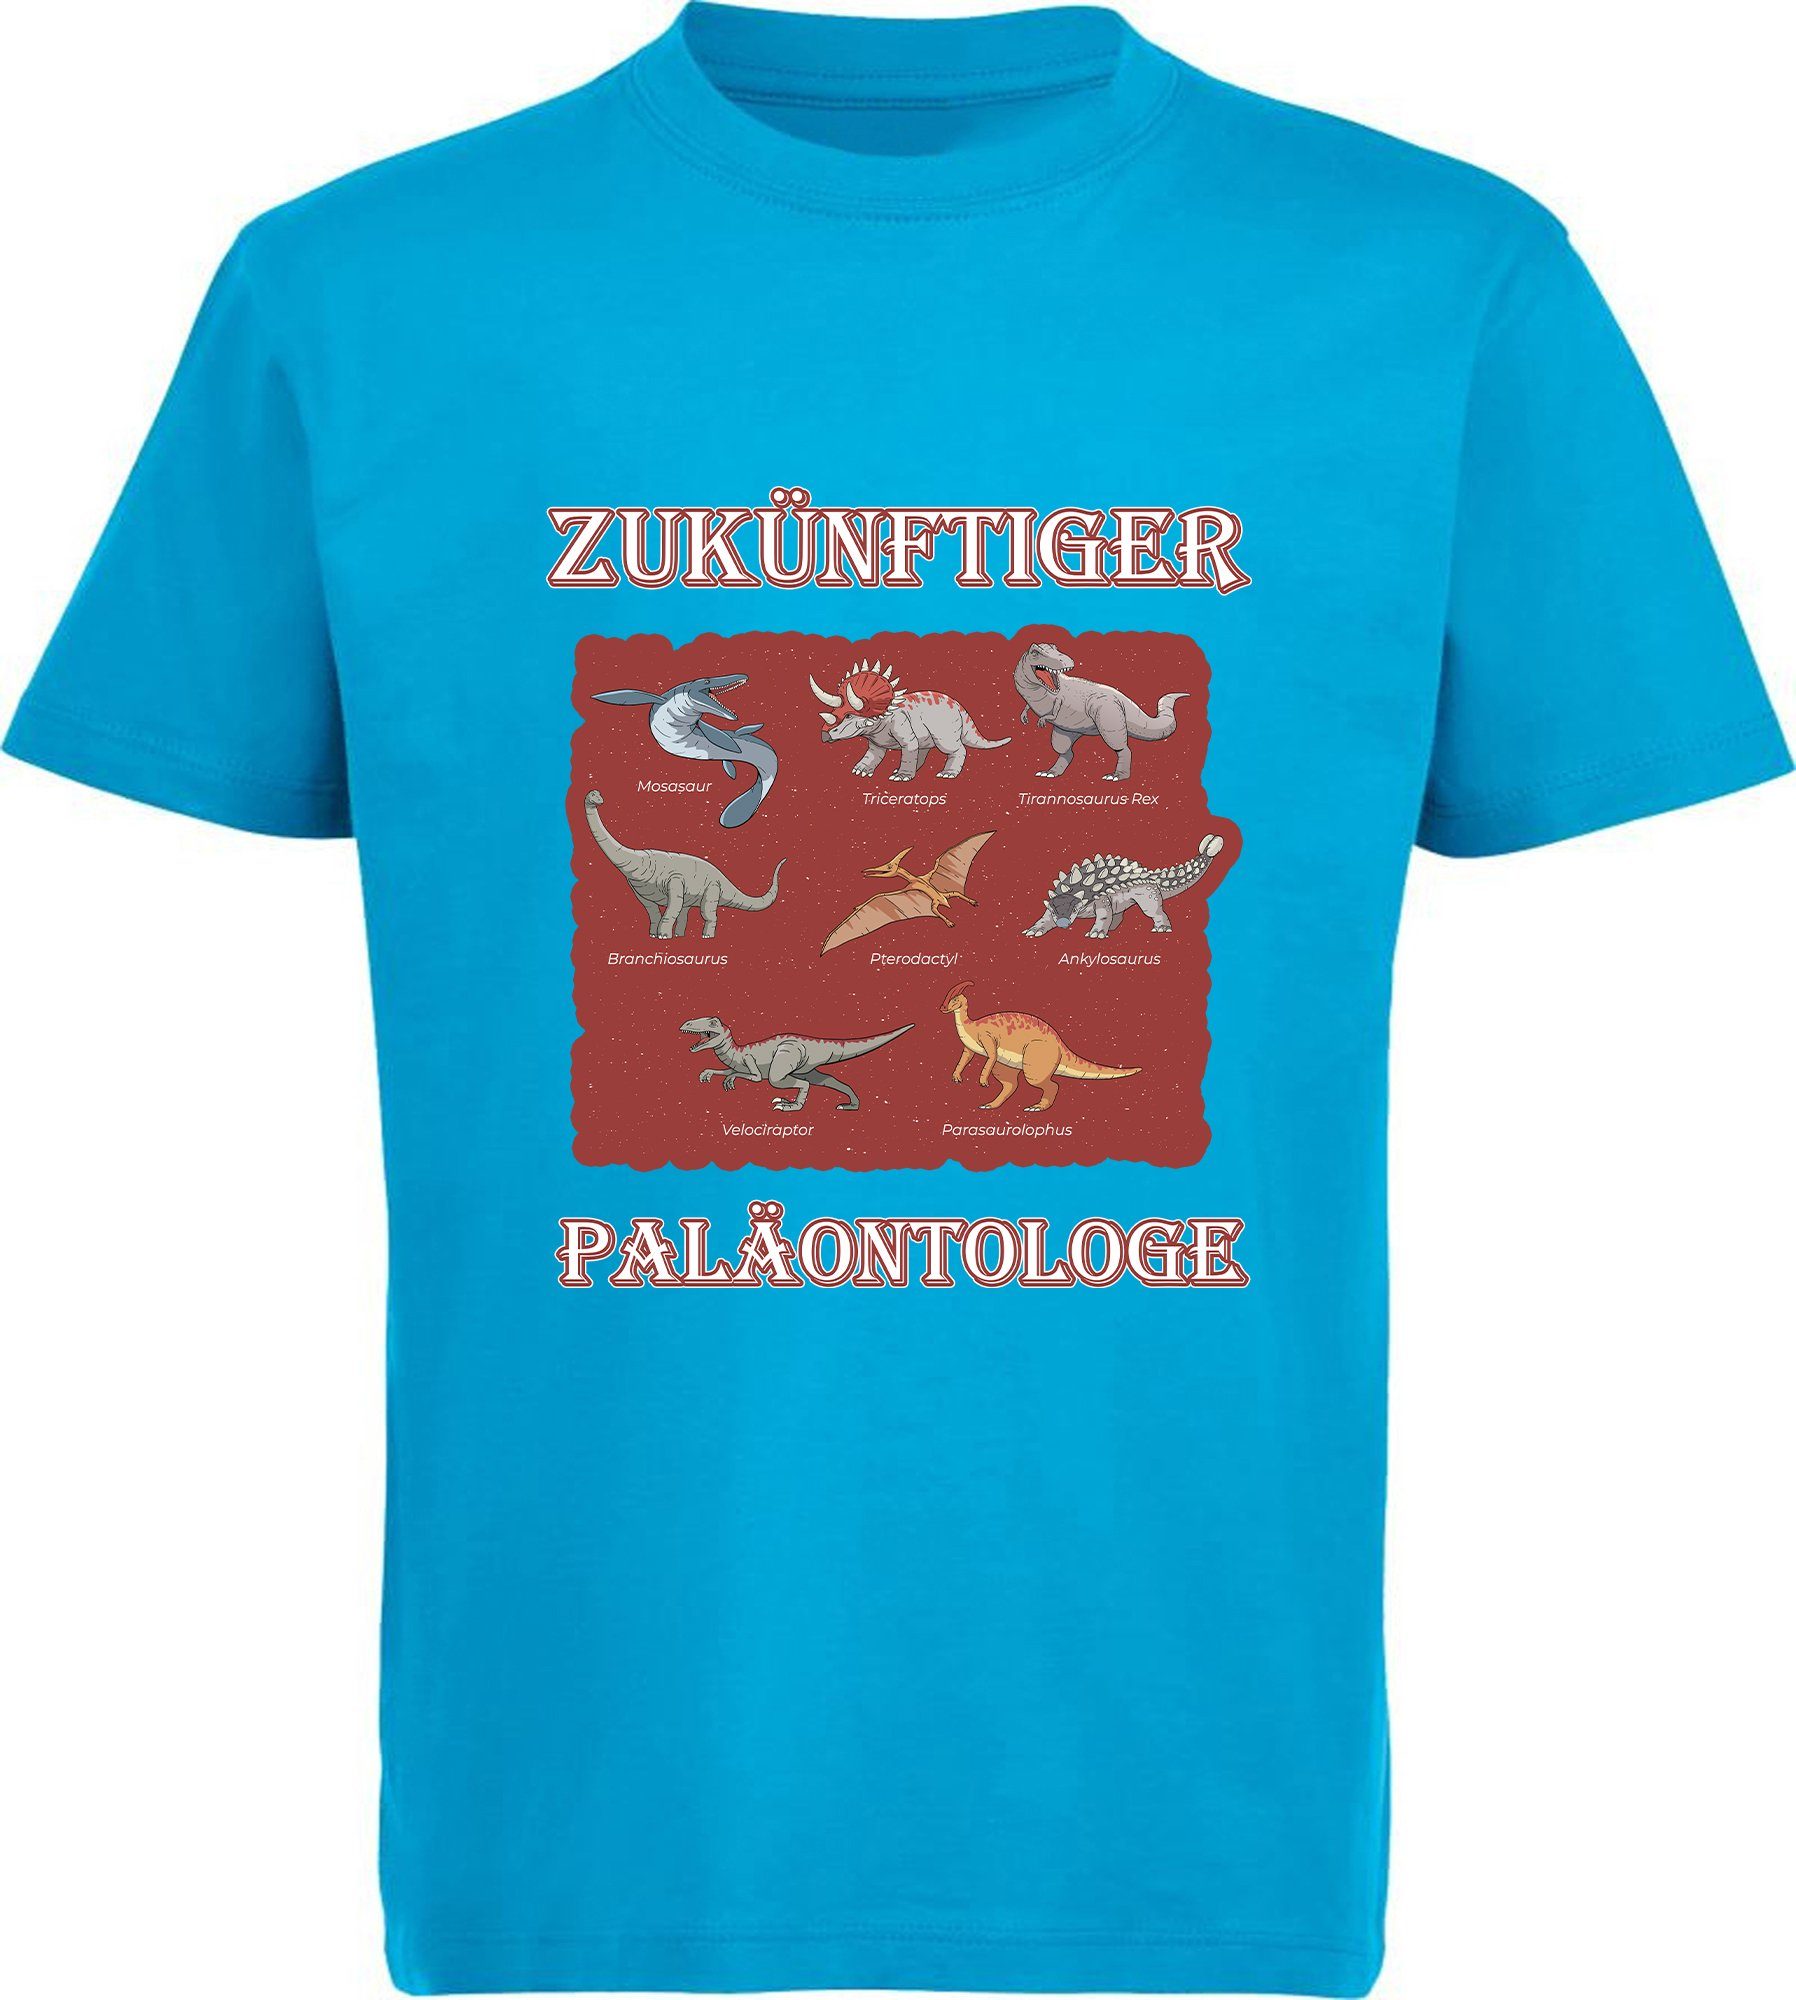 MyDesign24 T-Shirt bedrucktes Kinder T-Shirt Paläontologe mit vielen Dinosauriern 100% Baumwolle mit Dino Aufdruck, aqua blau i50